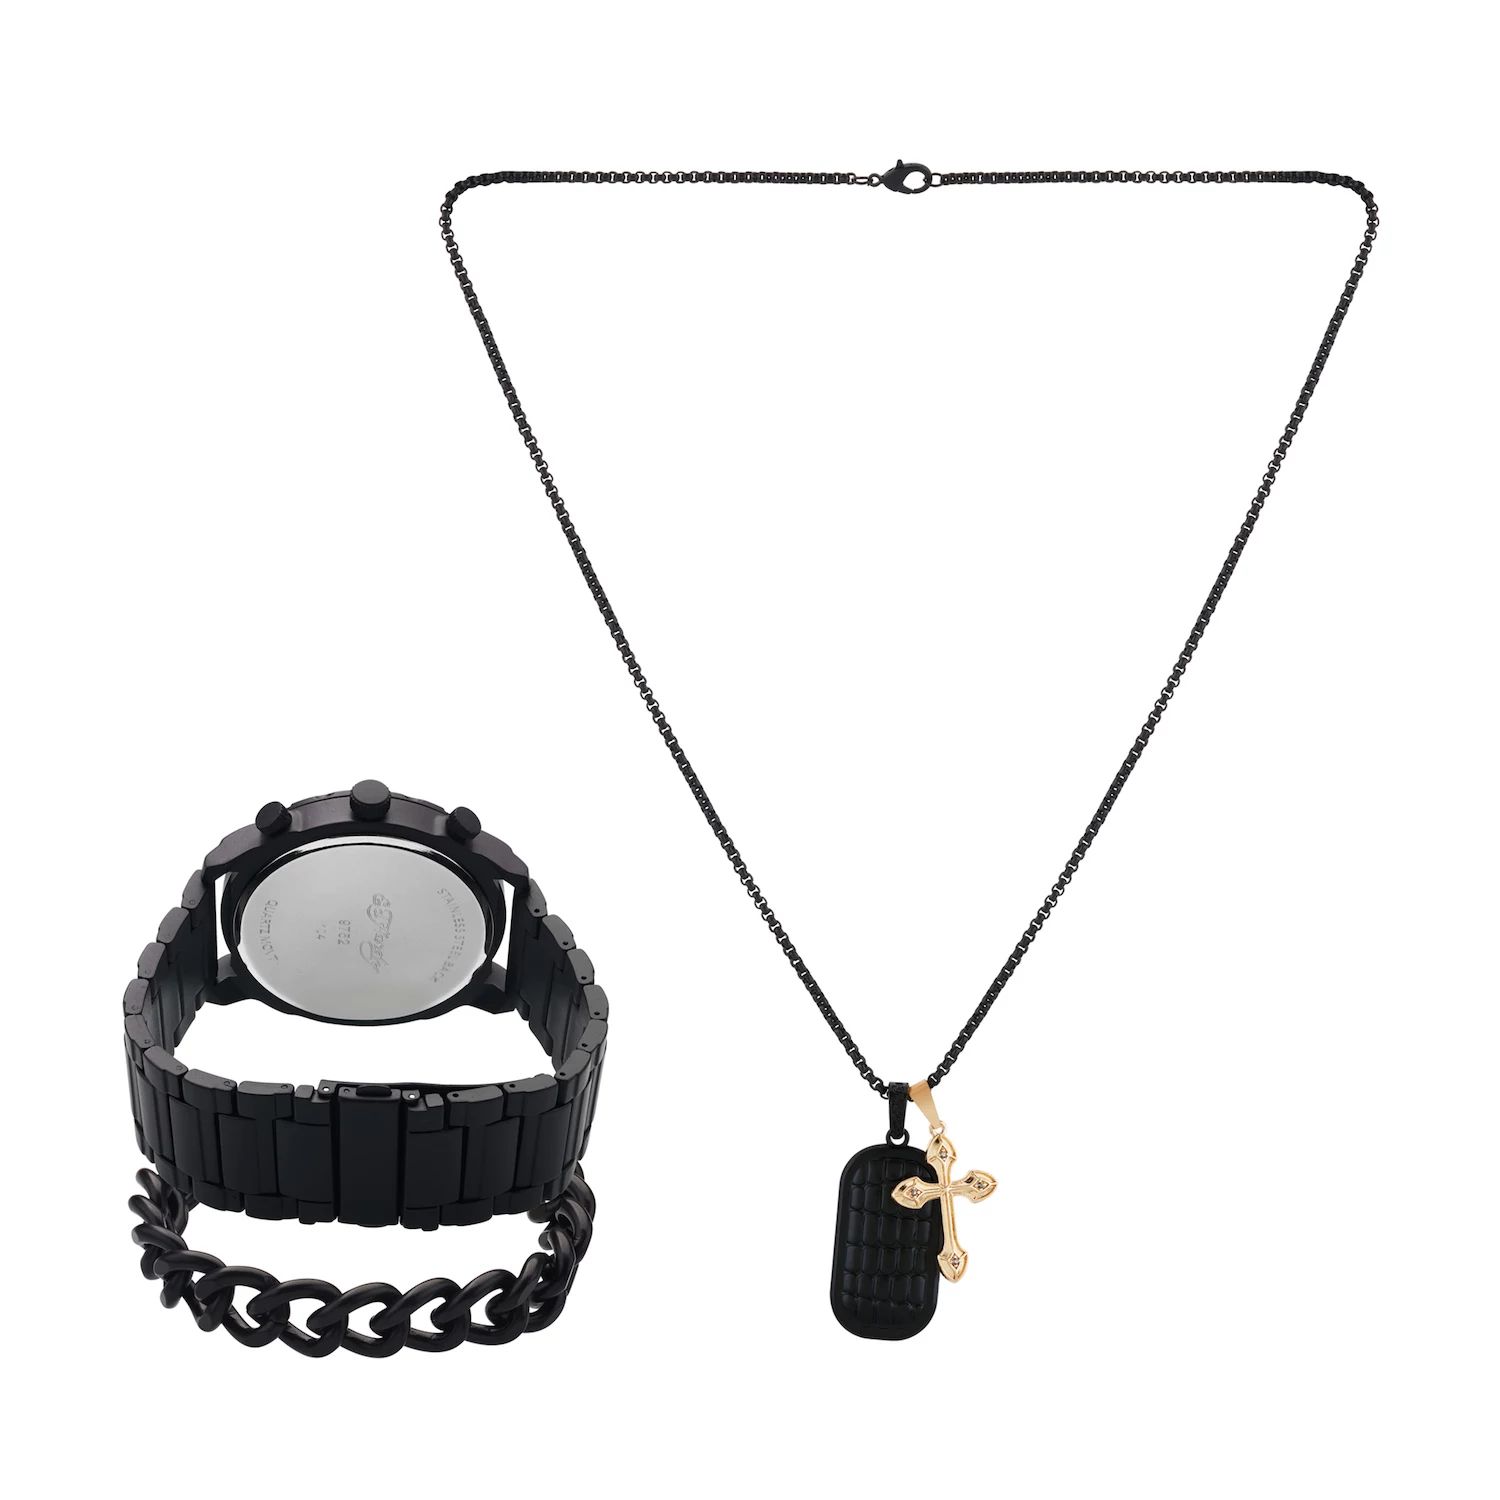 Подарочный набор из часов и ожерелья с черным металлическим браслетом 50 мм Ed Hardy кроссовки ed hardy bump ed flame black gold white